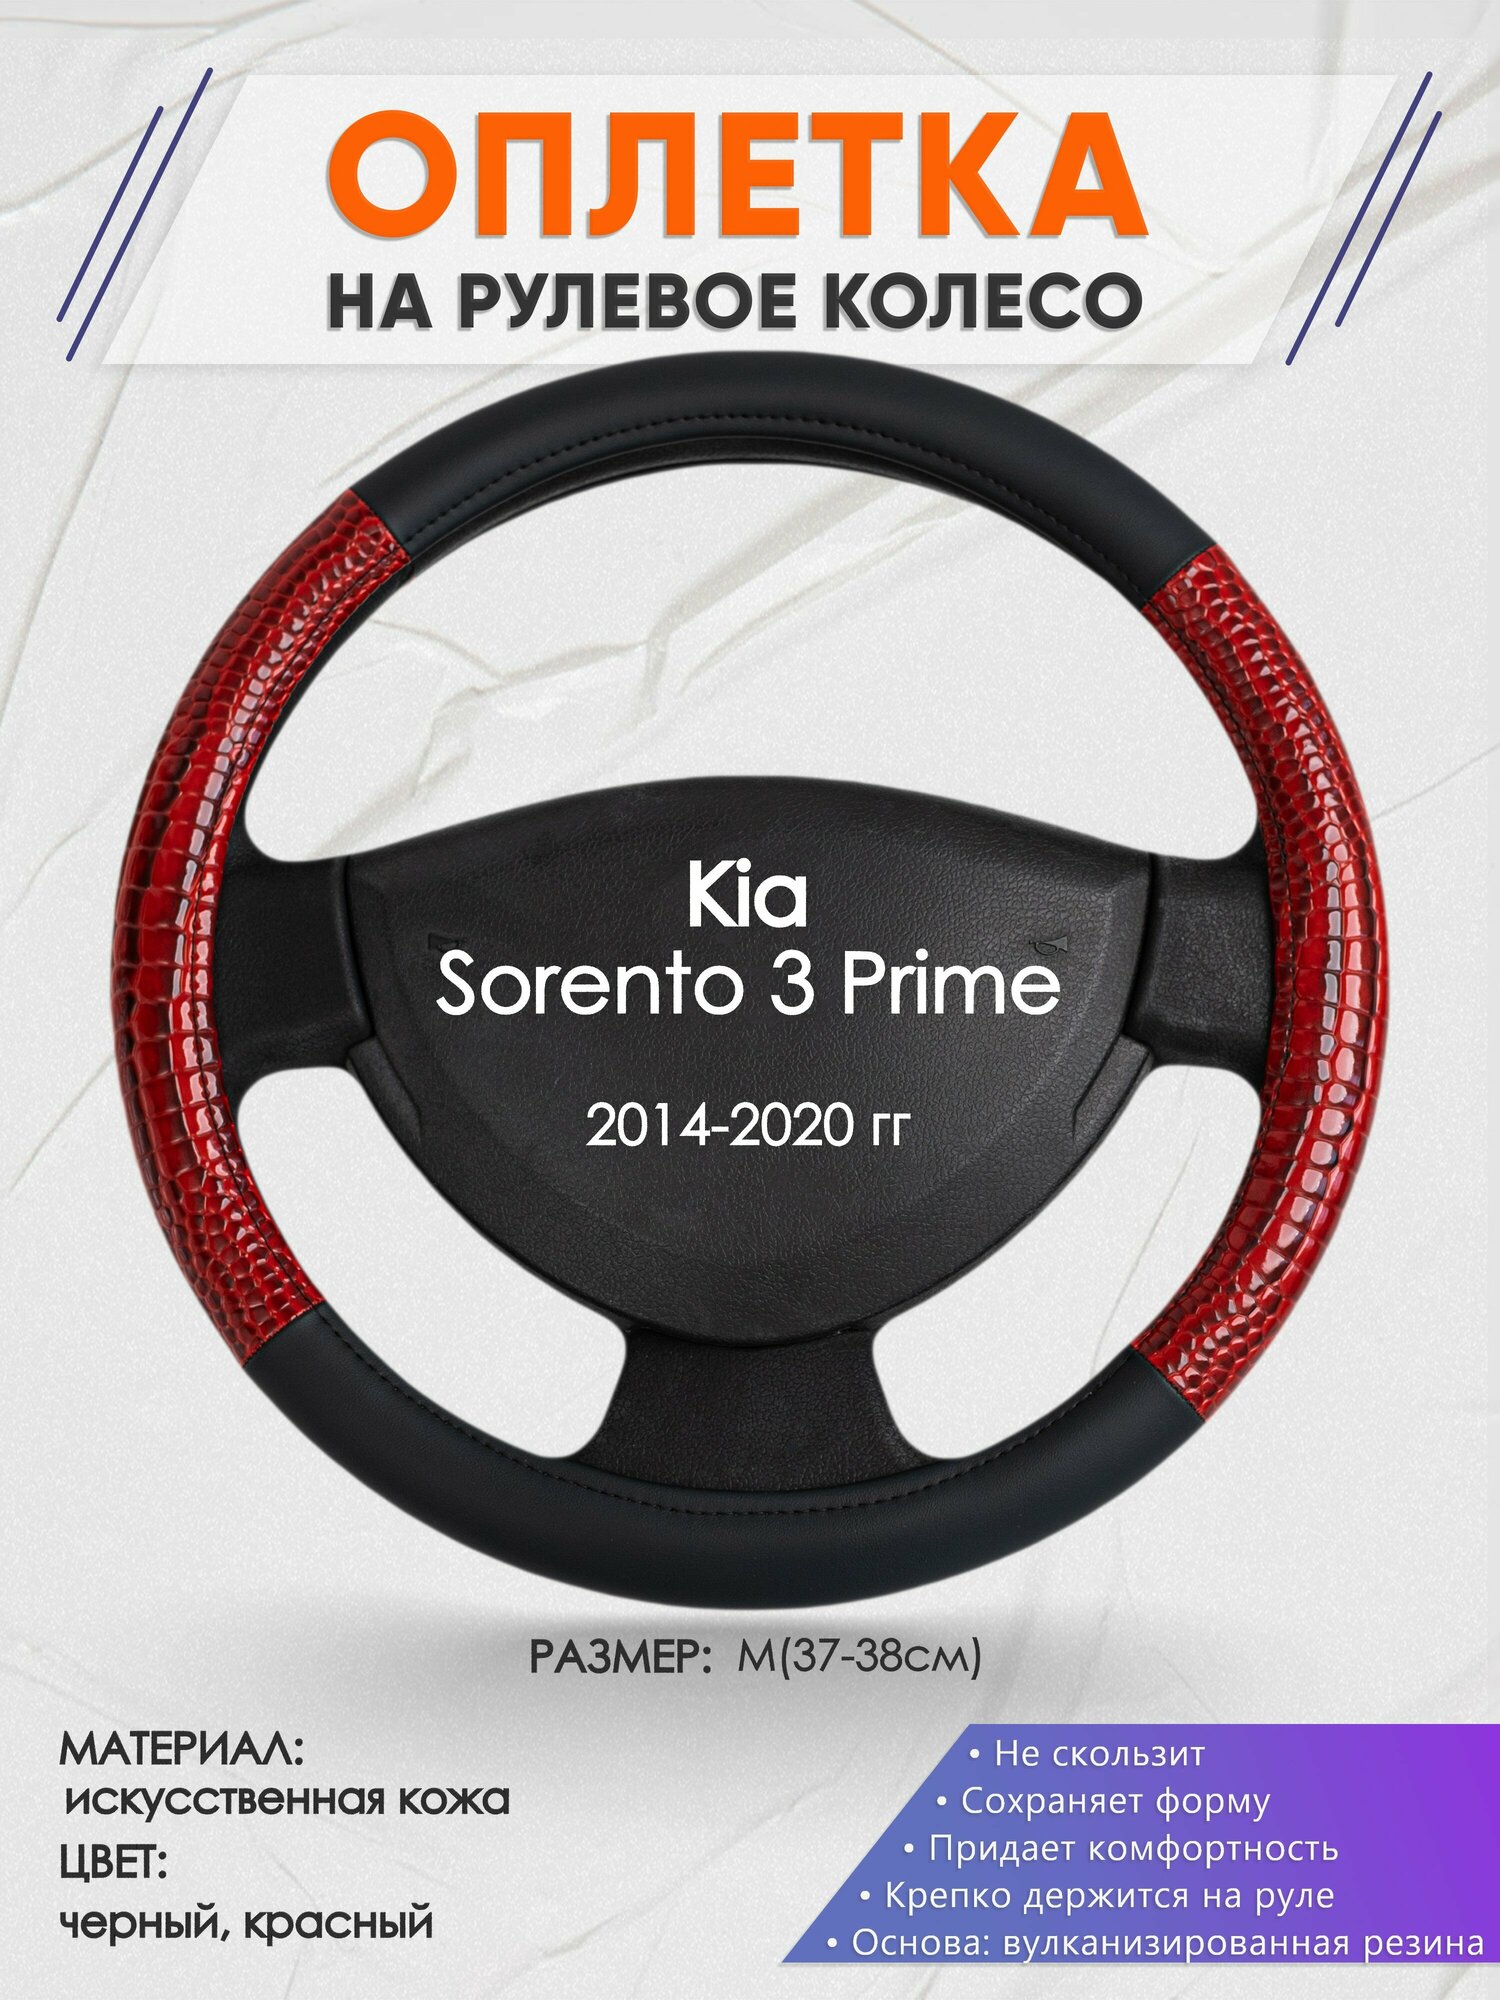 Оплетка на руль для Kia Sorento 3 Prime (Киа Соренто 3) 2014-2020, M(37-38см), Искусственная кожа 16